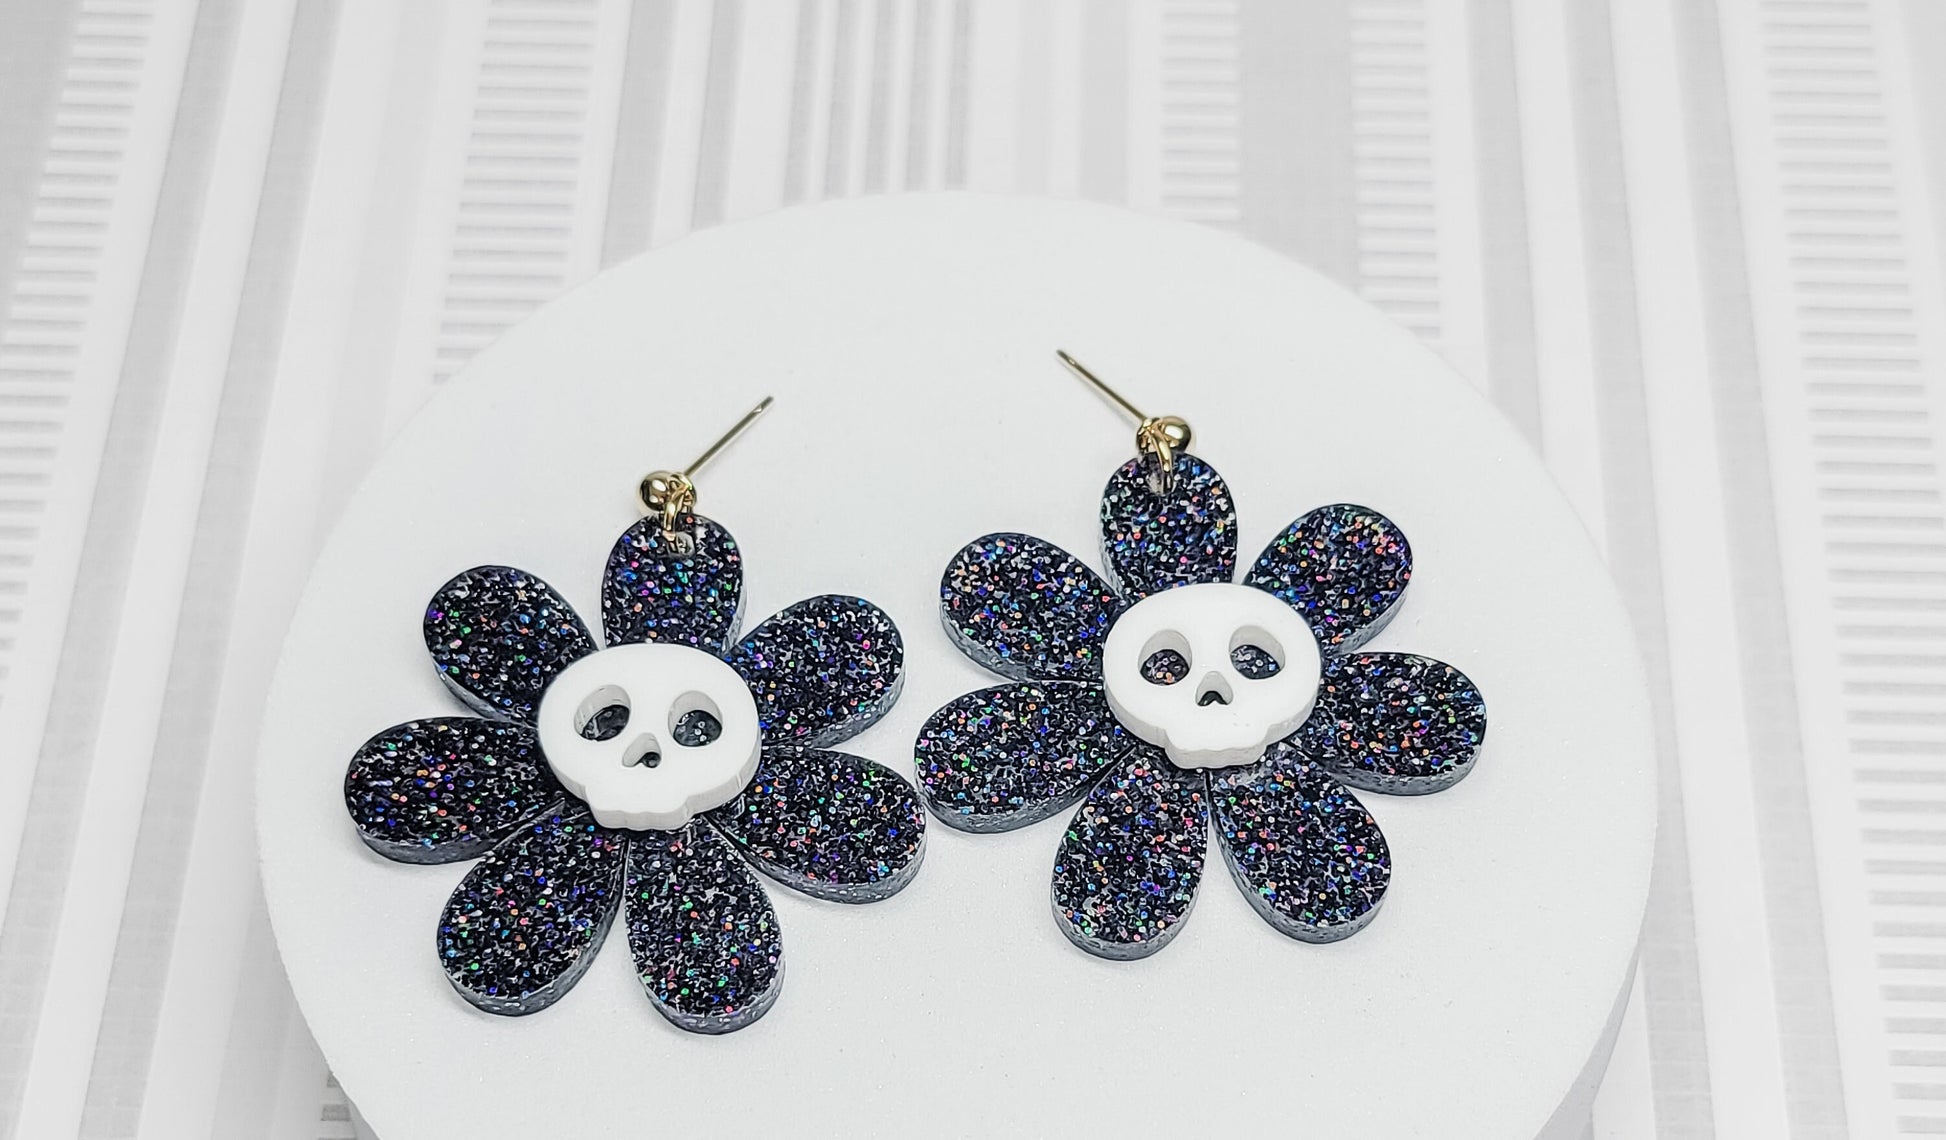 Skull Earrings, Skull Daisy Accessories, Halloween Earrings, Spooky Jewelry, Fall Earrings, Statement Jewelry, Gothic Floral Earrings